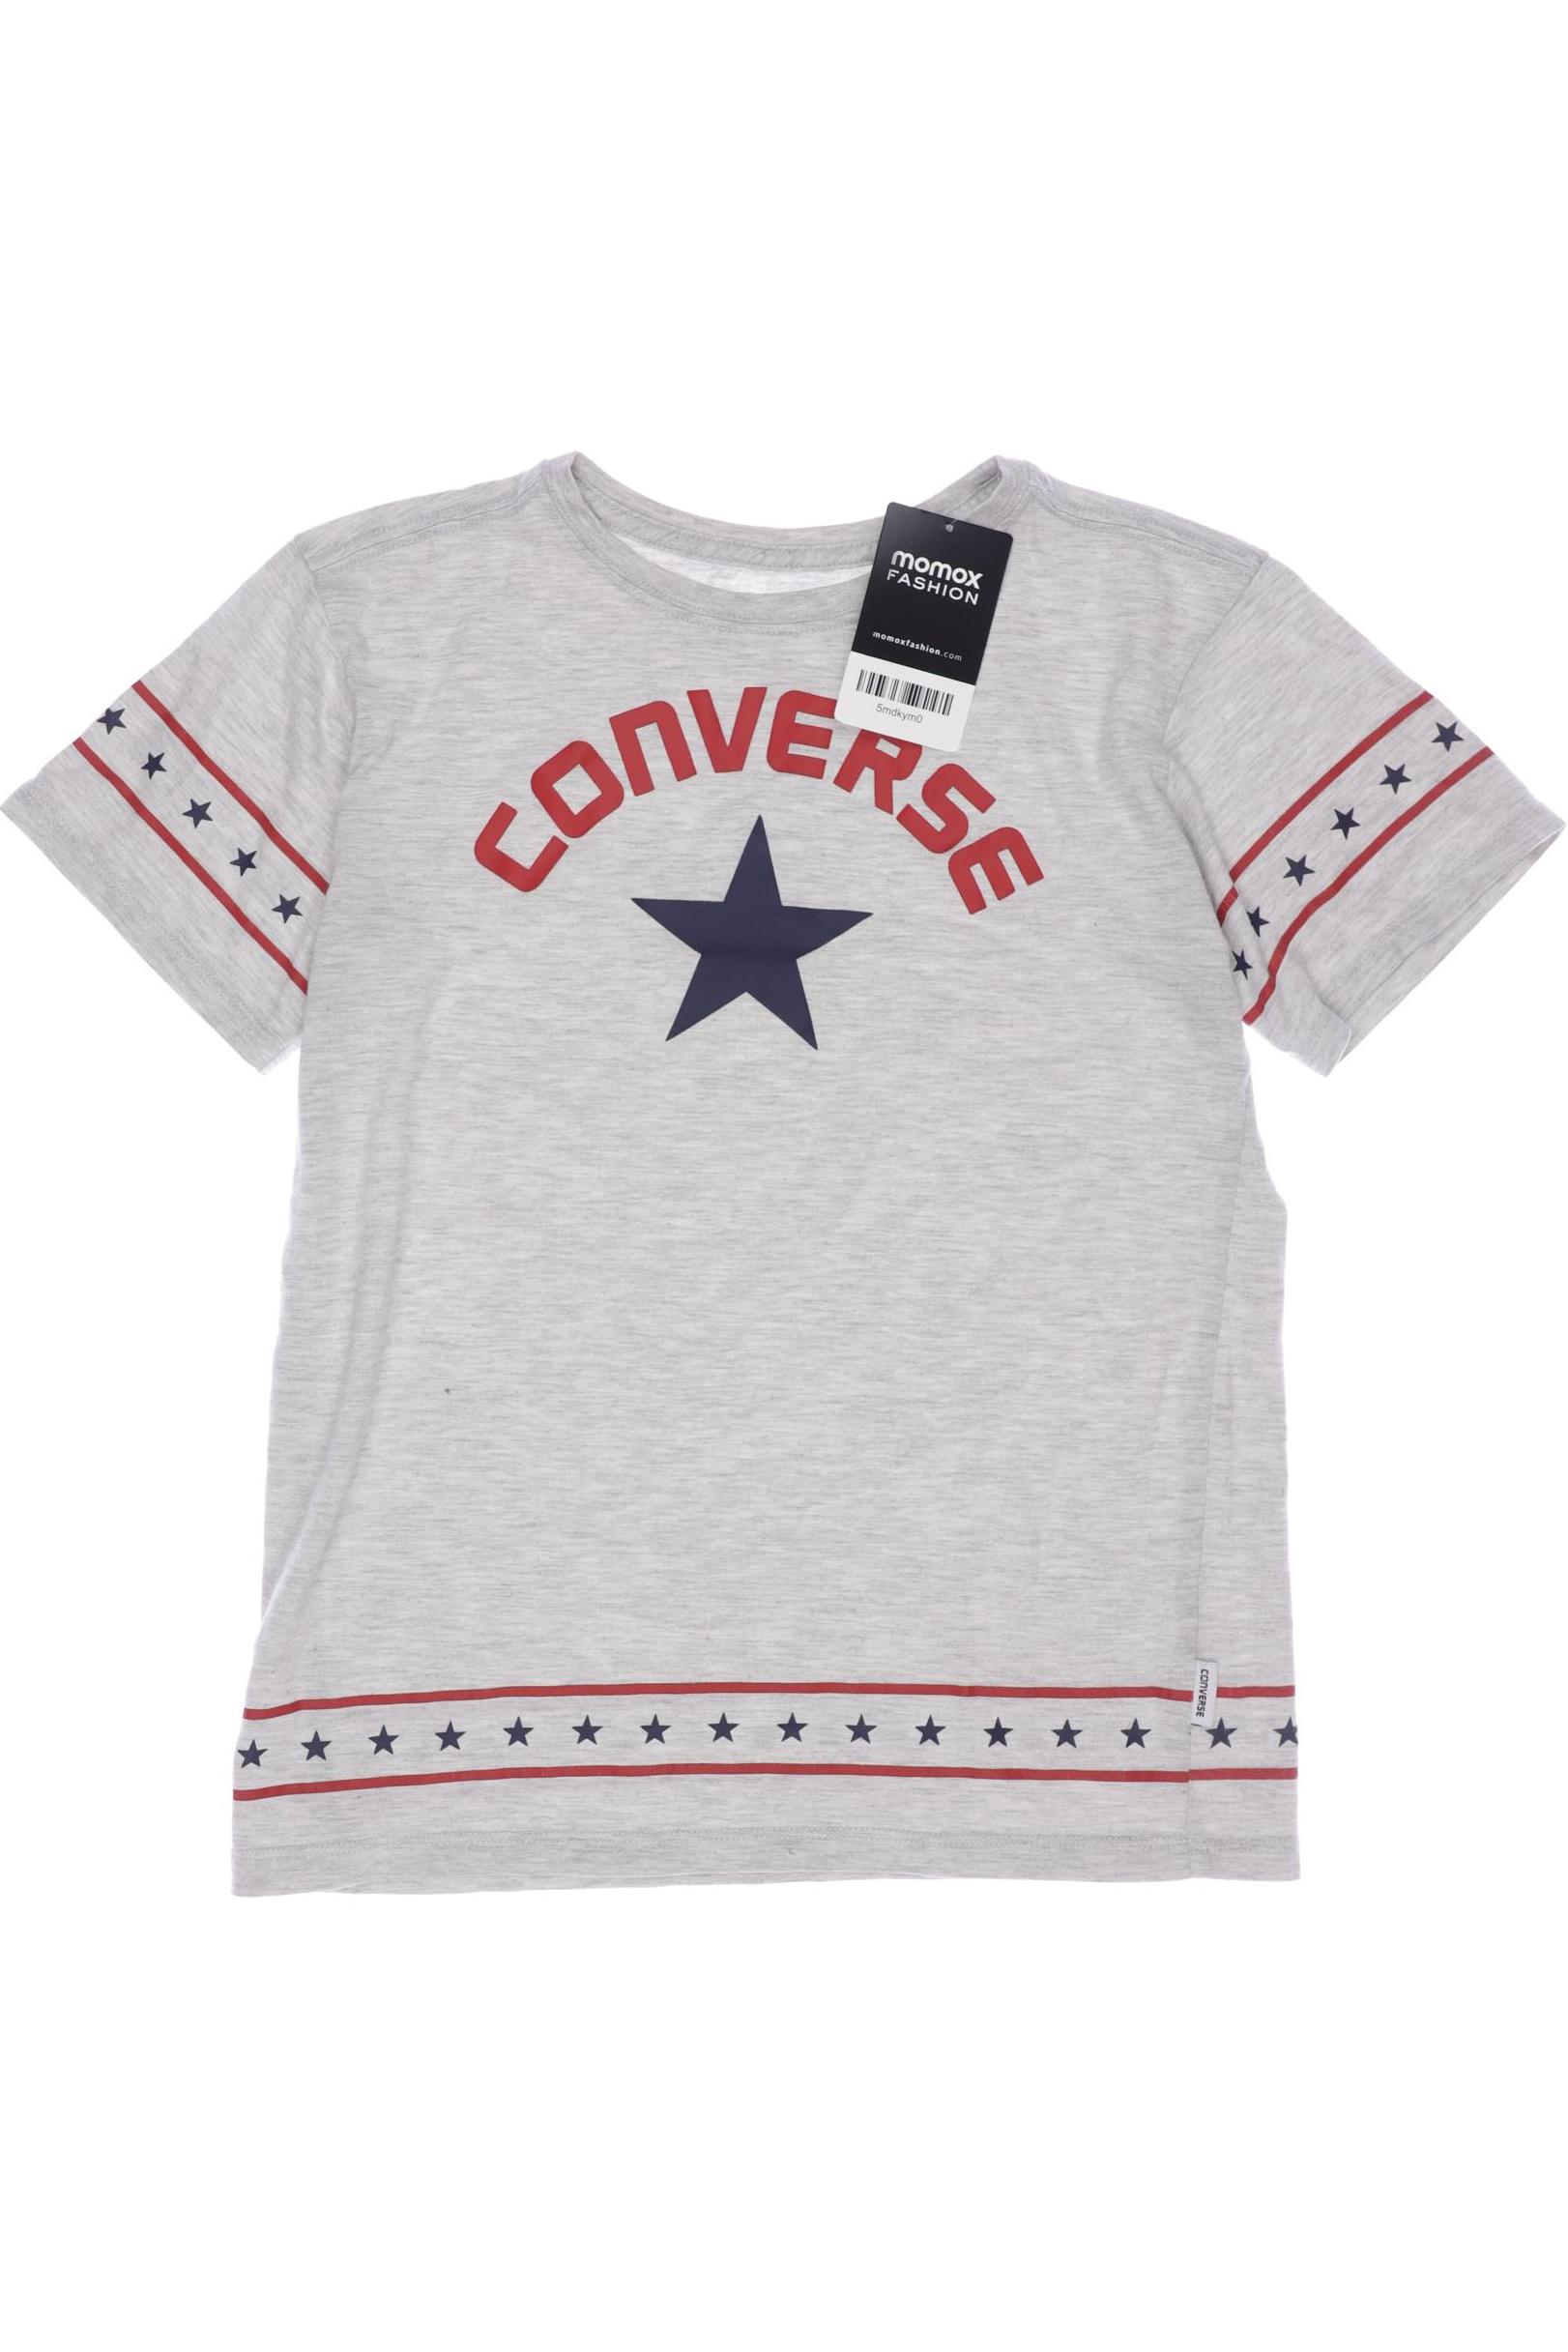 Converse Herren T-Shirt, grau, Gr. 152 von Converse